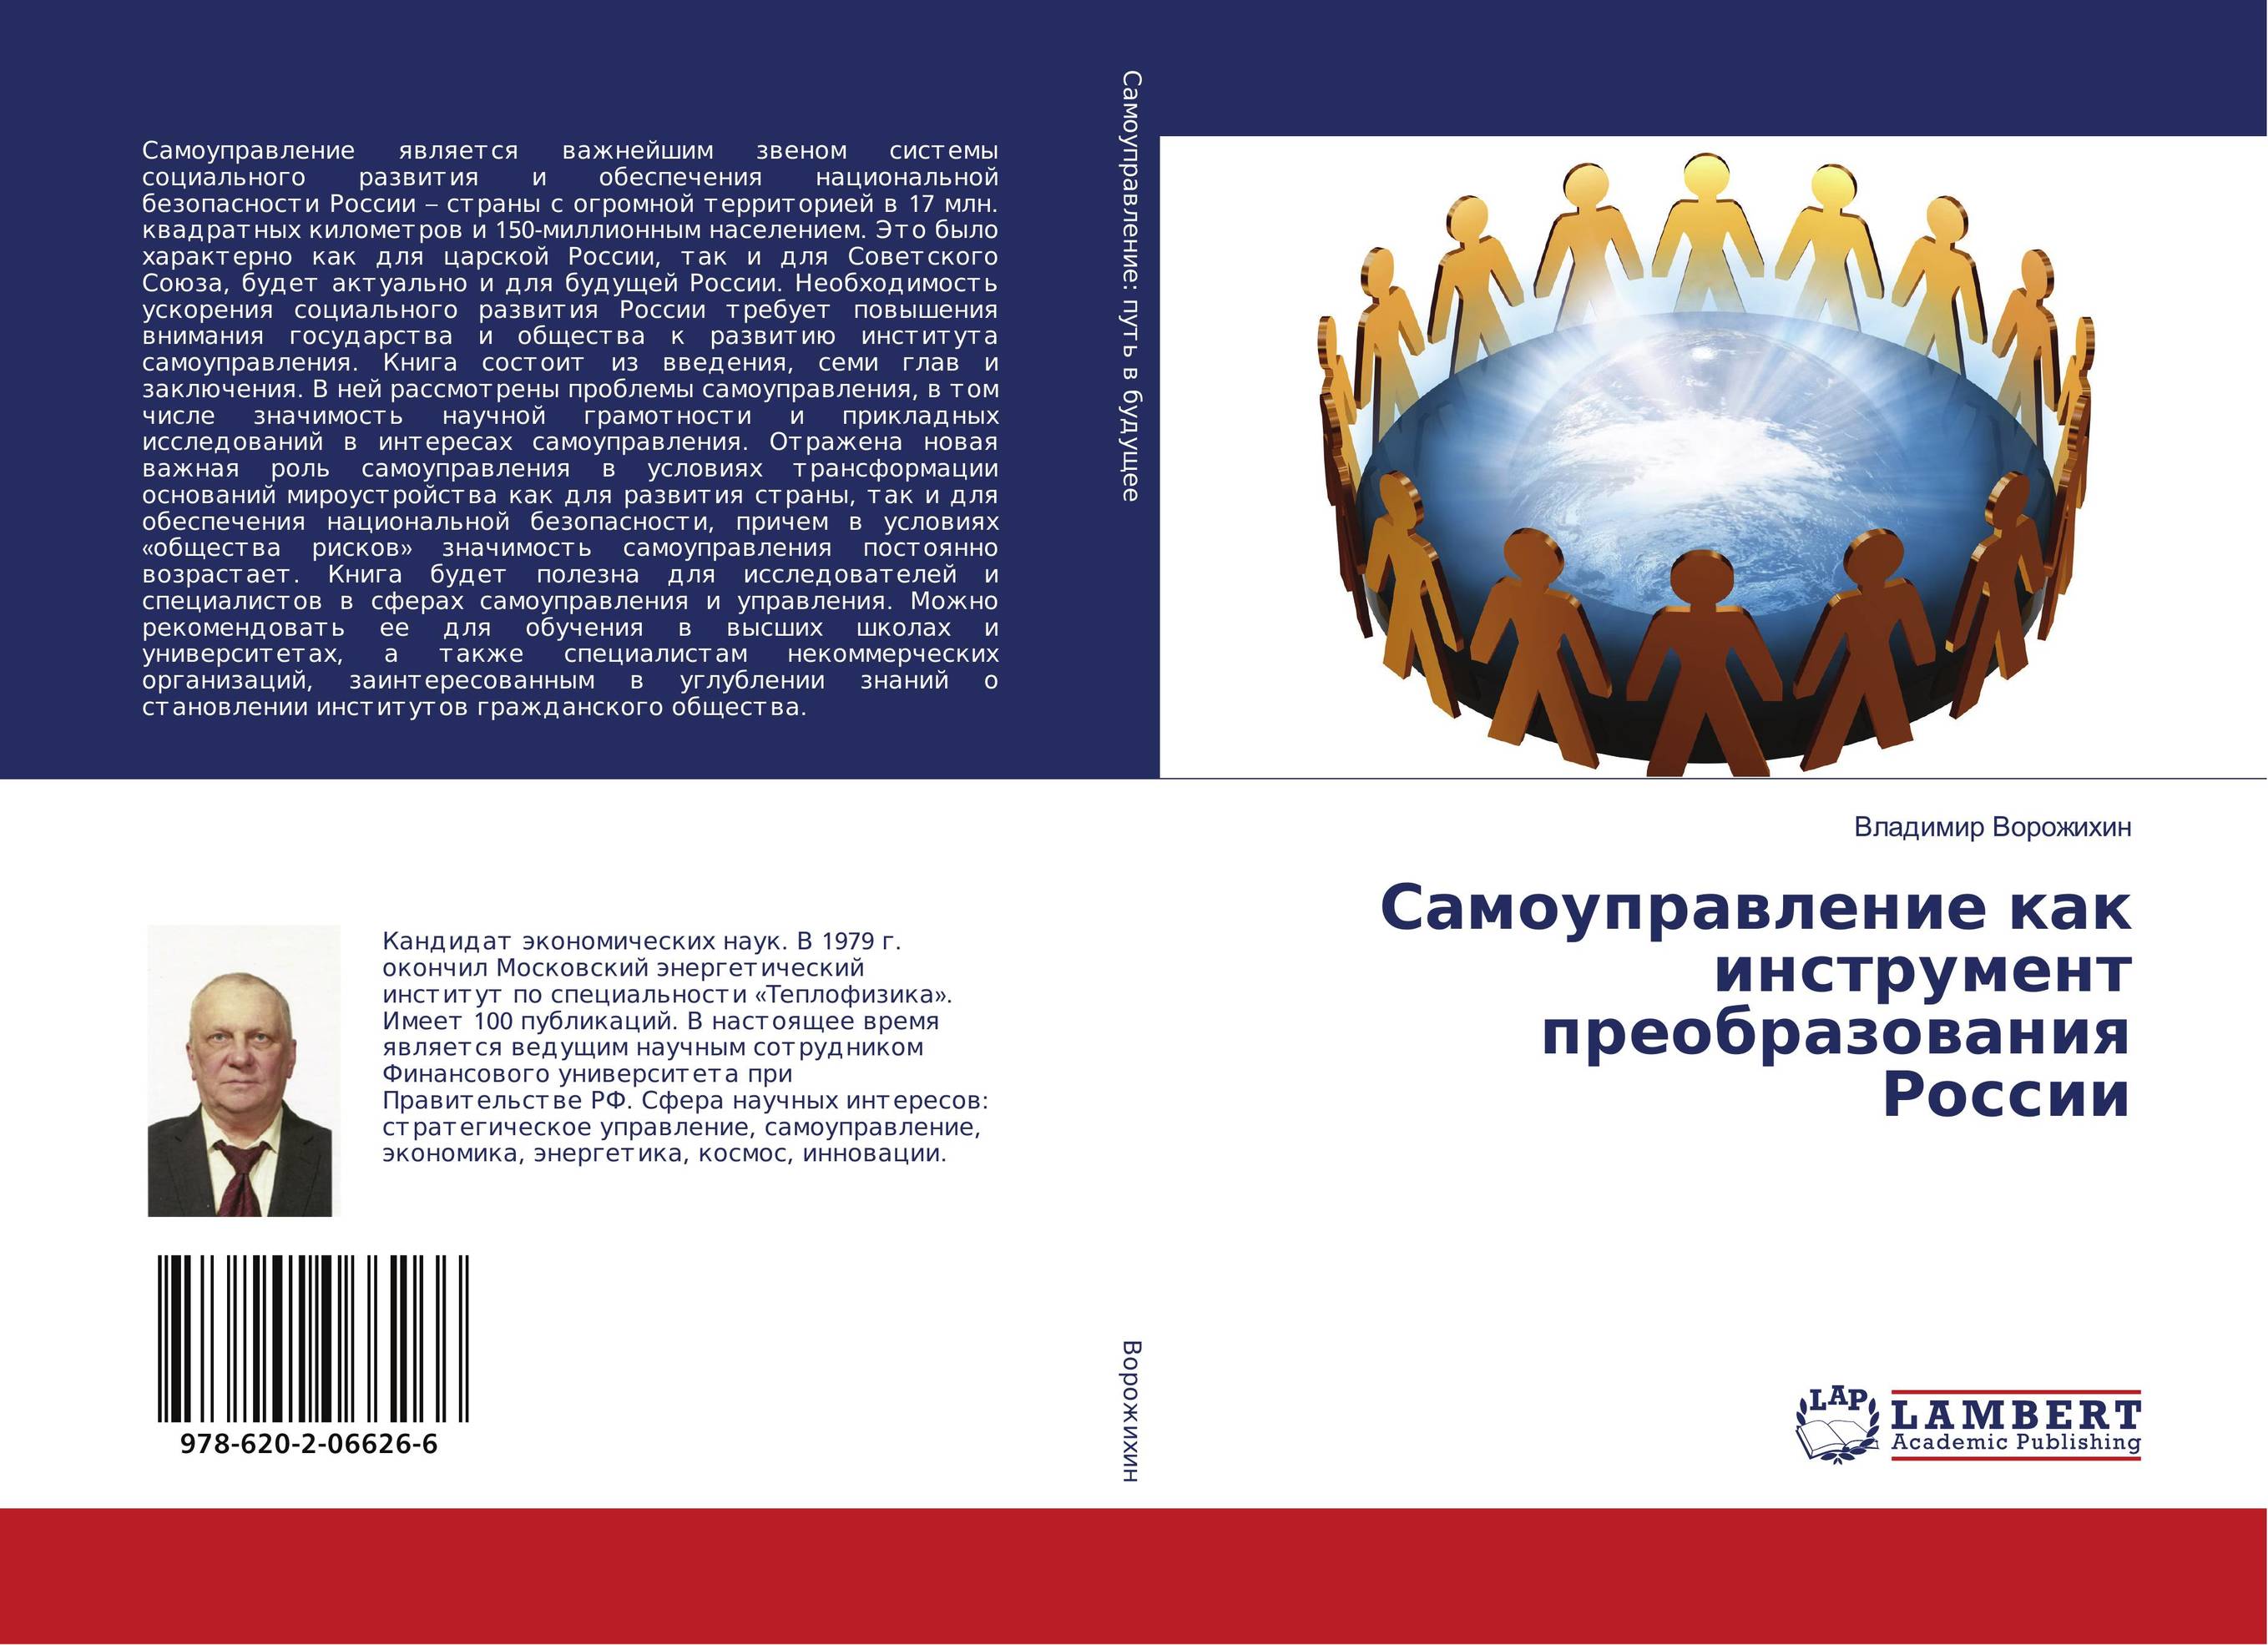 Монография социальное развитие. Книги по самоуправлению. ISBN 978-5-08-006626-9.